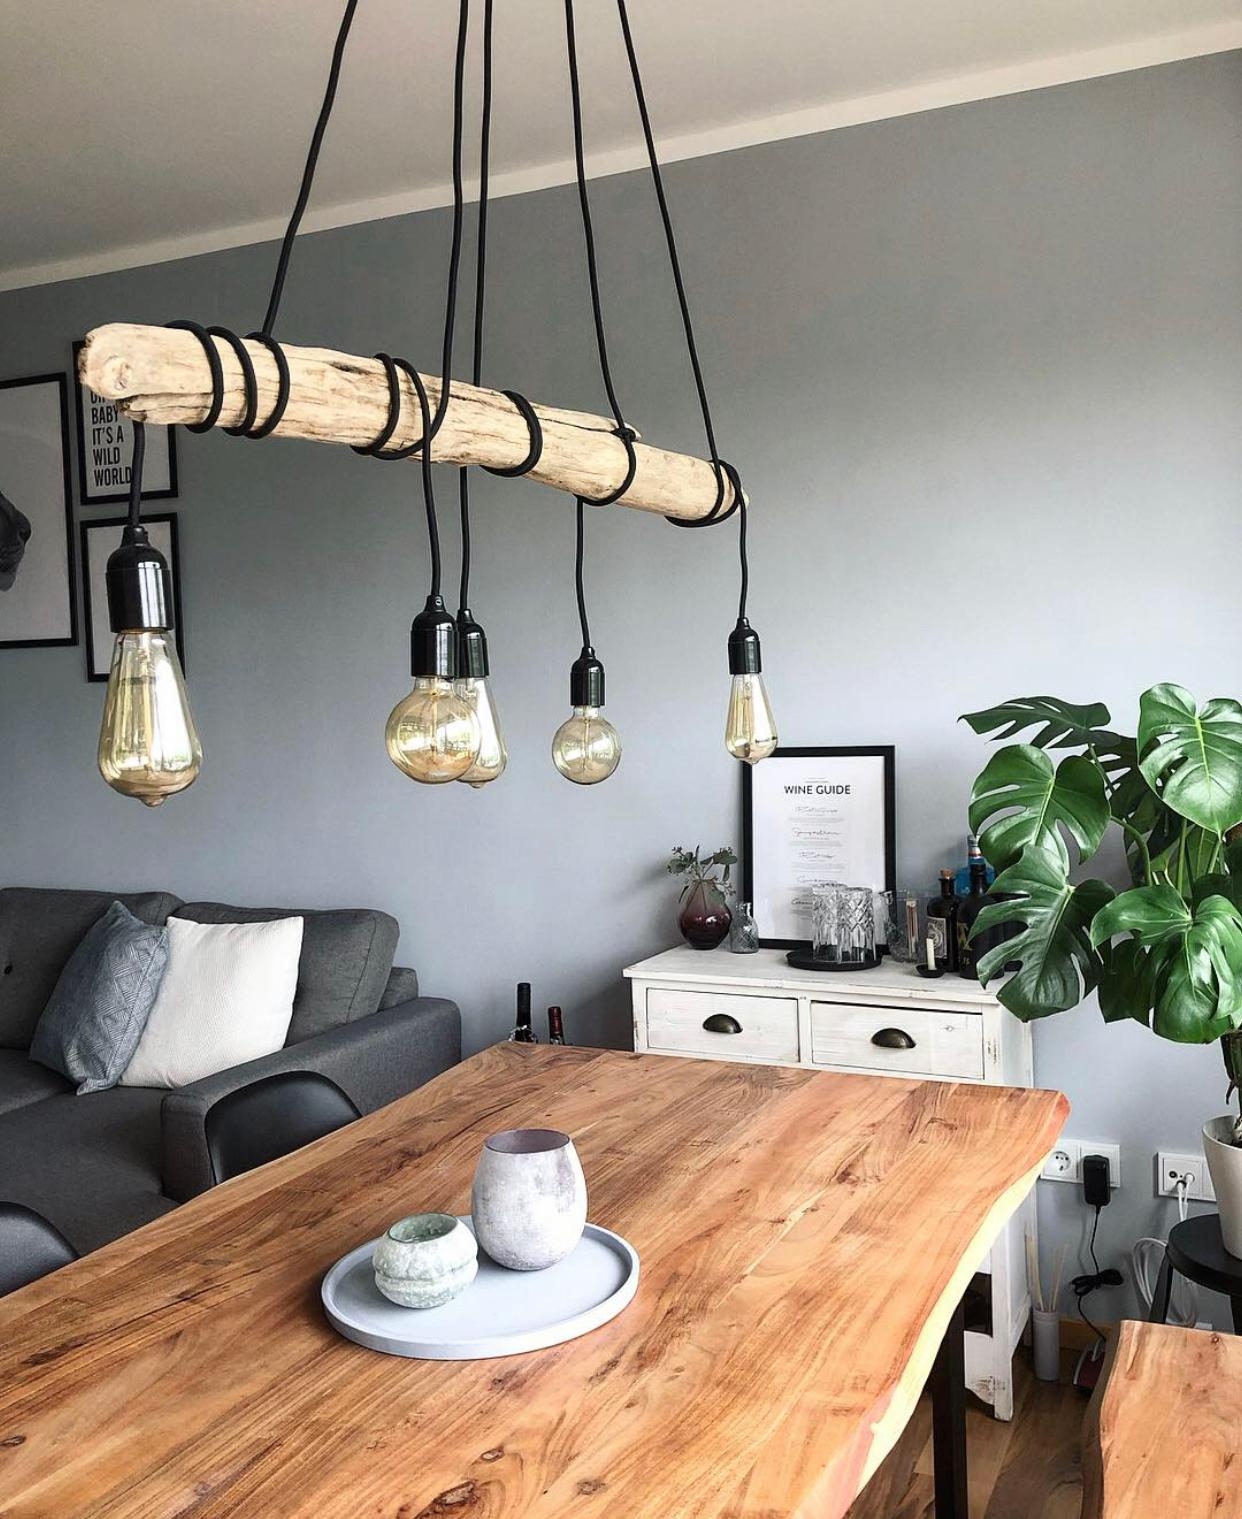 Meine geliebte DIY-Lampe 💡😍 #diy #lamp #scandi #interior #livingroom